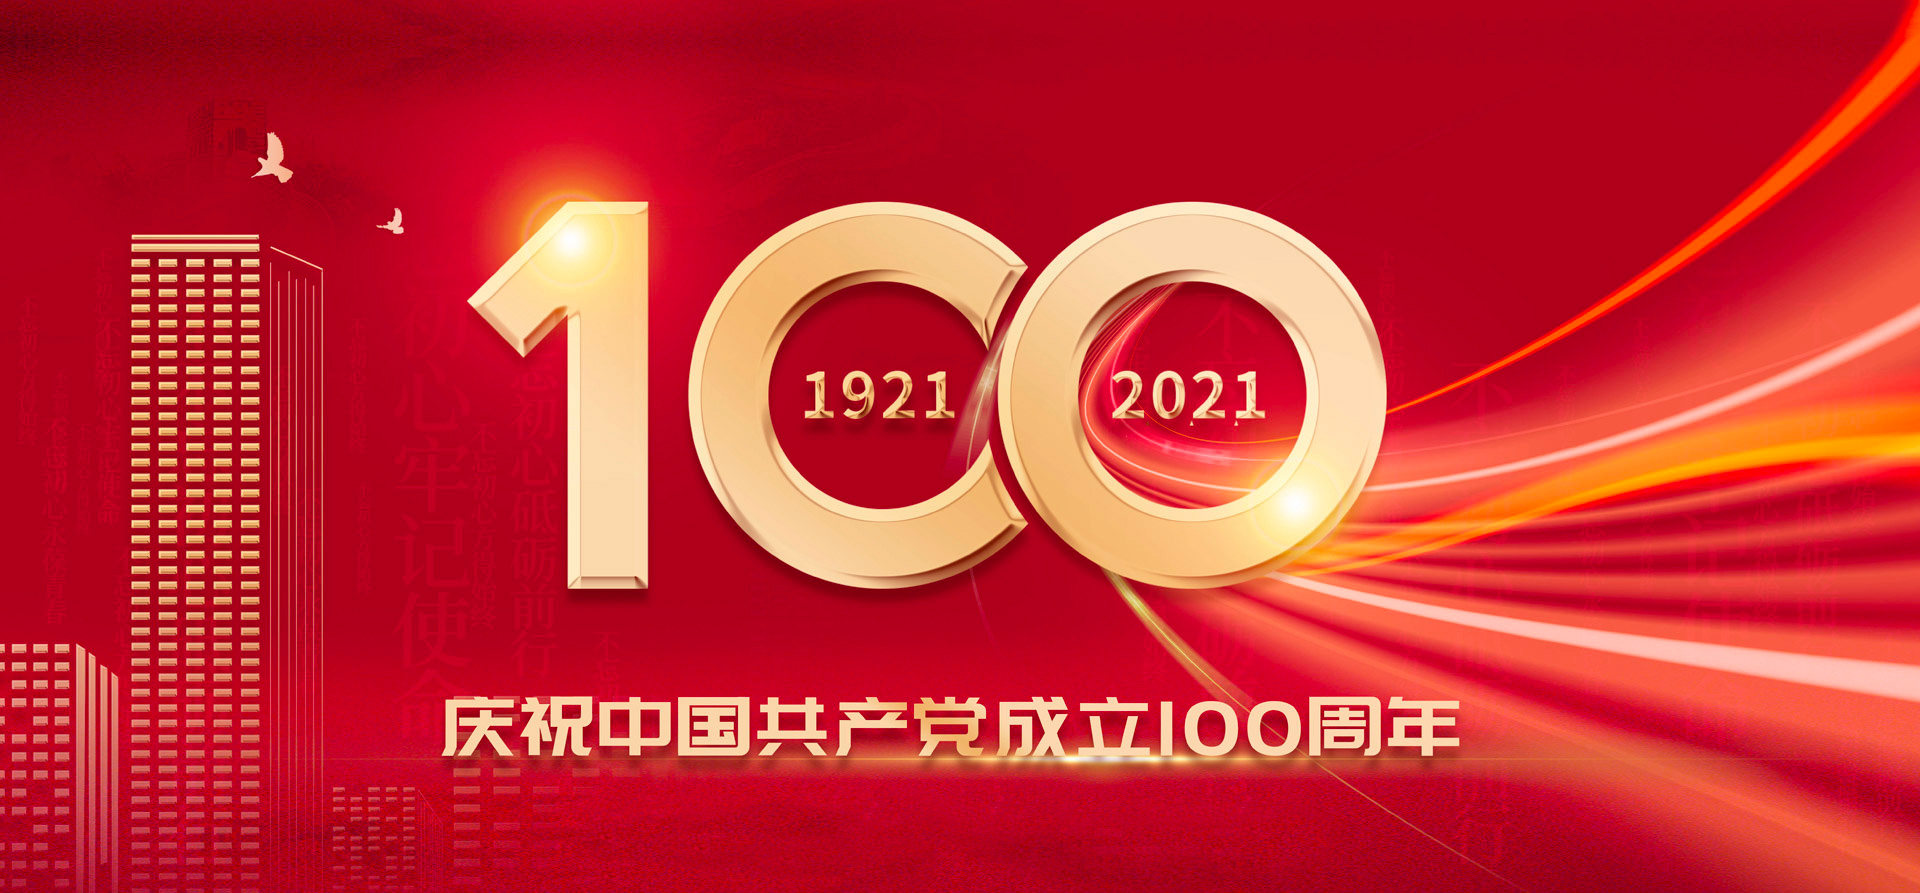 100周年